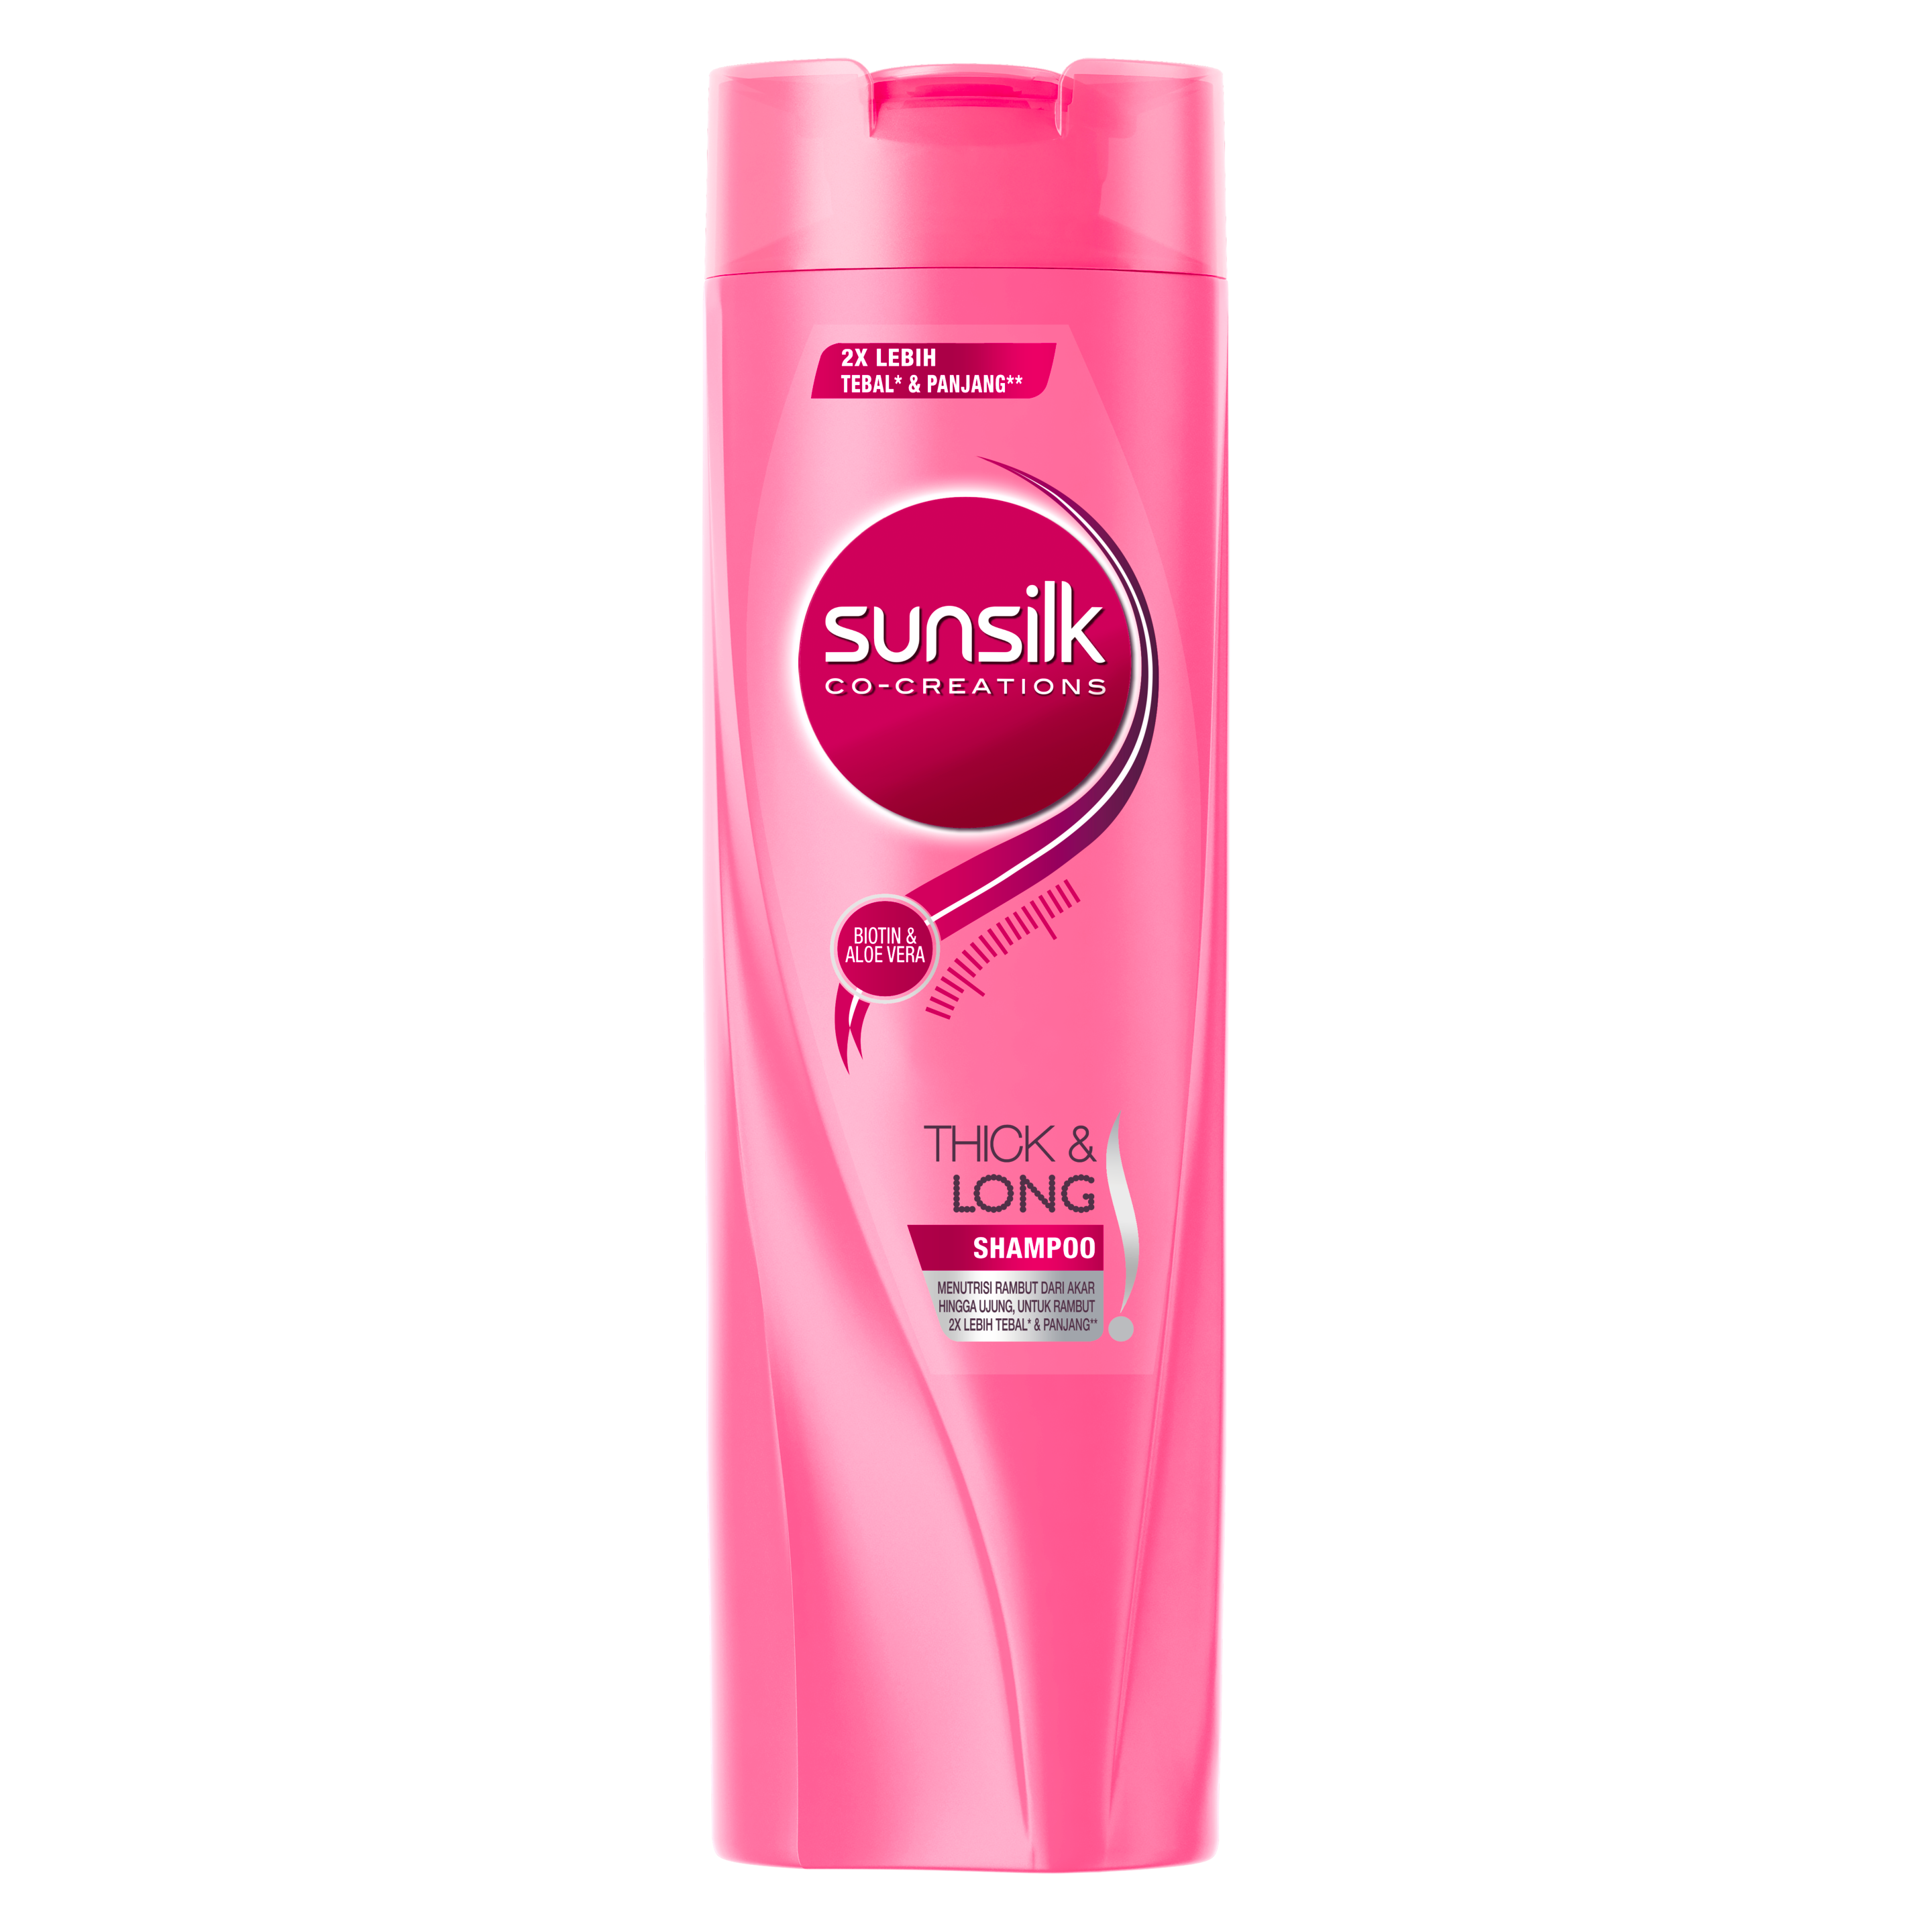 Sunsilk Thick & Long Shampoo